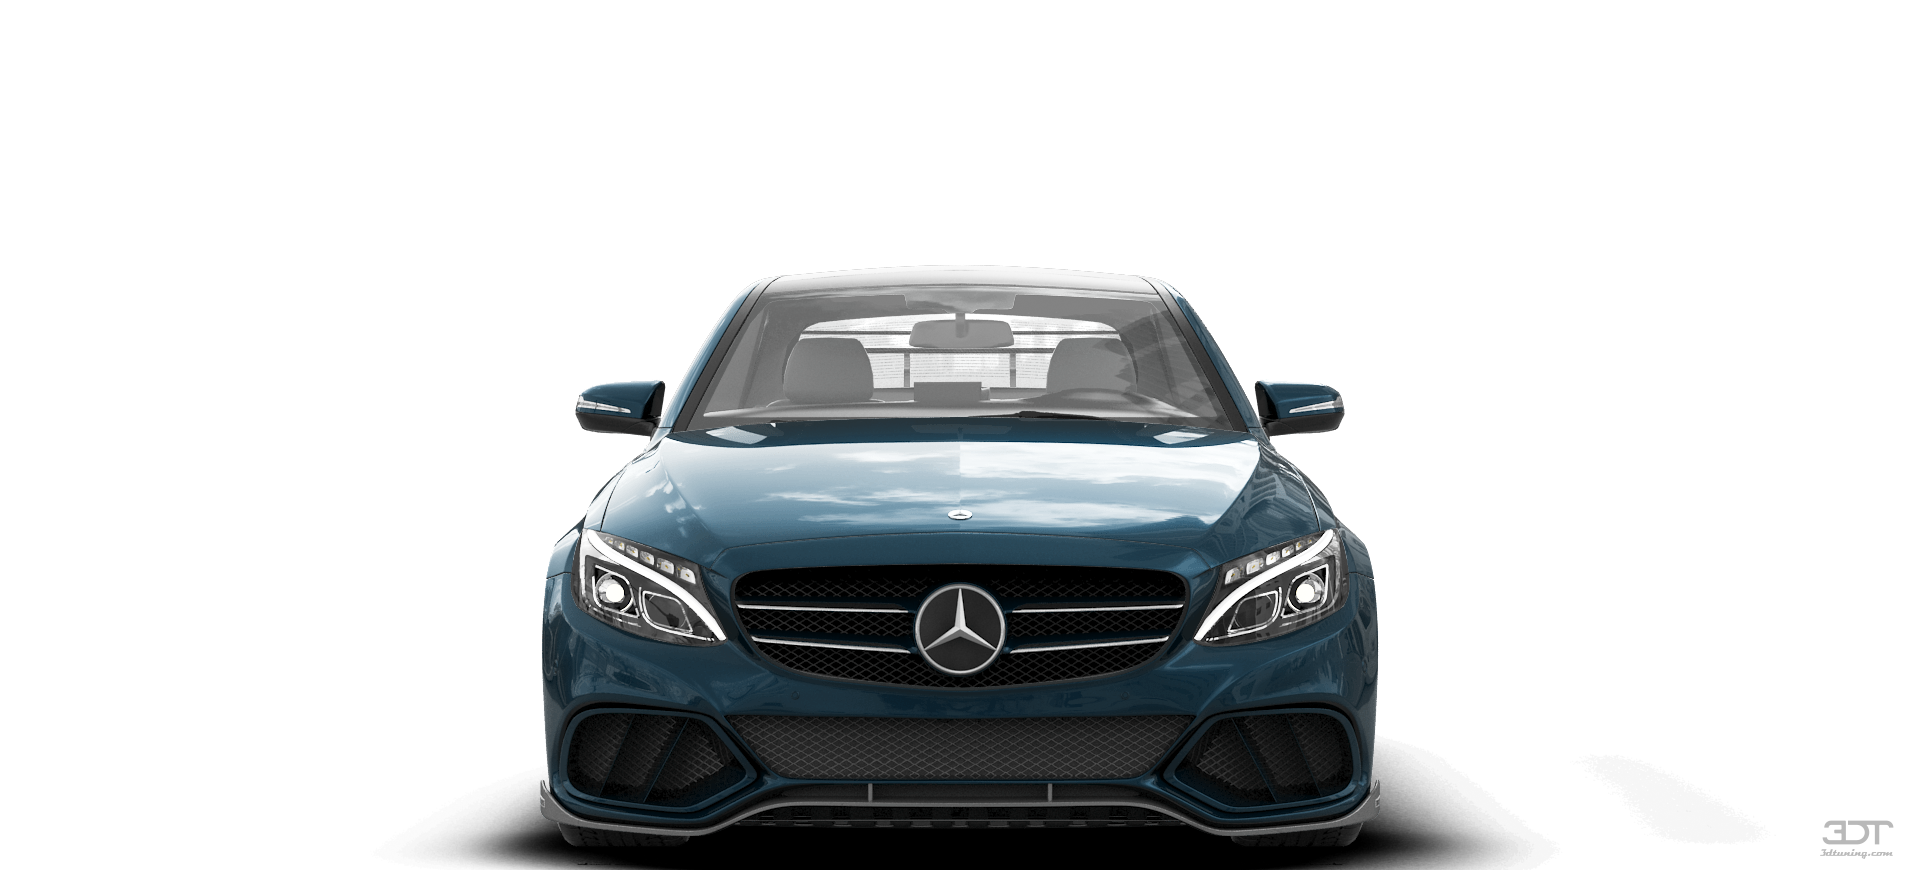 . Hdpng.com Mercedes C Class Hd Sedan 2016 Tuning Hdpng.com  - Of Car, Transparent background PNG HD thumbnail